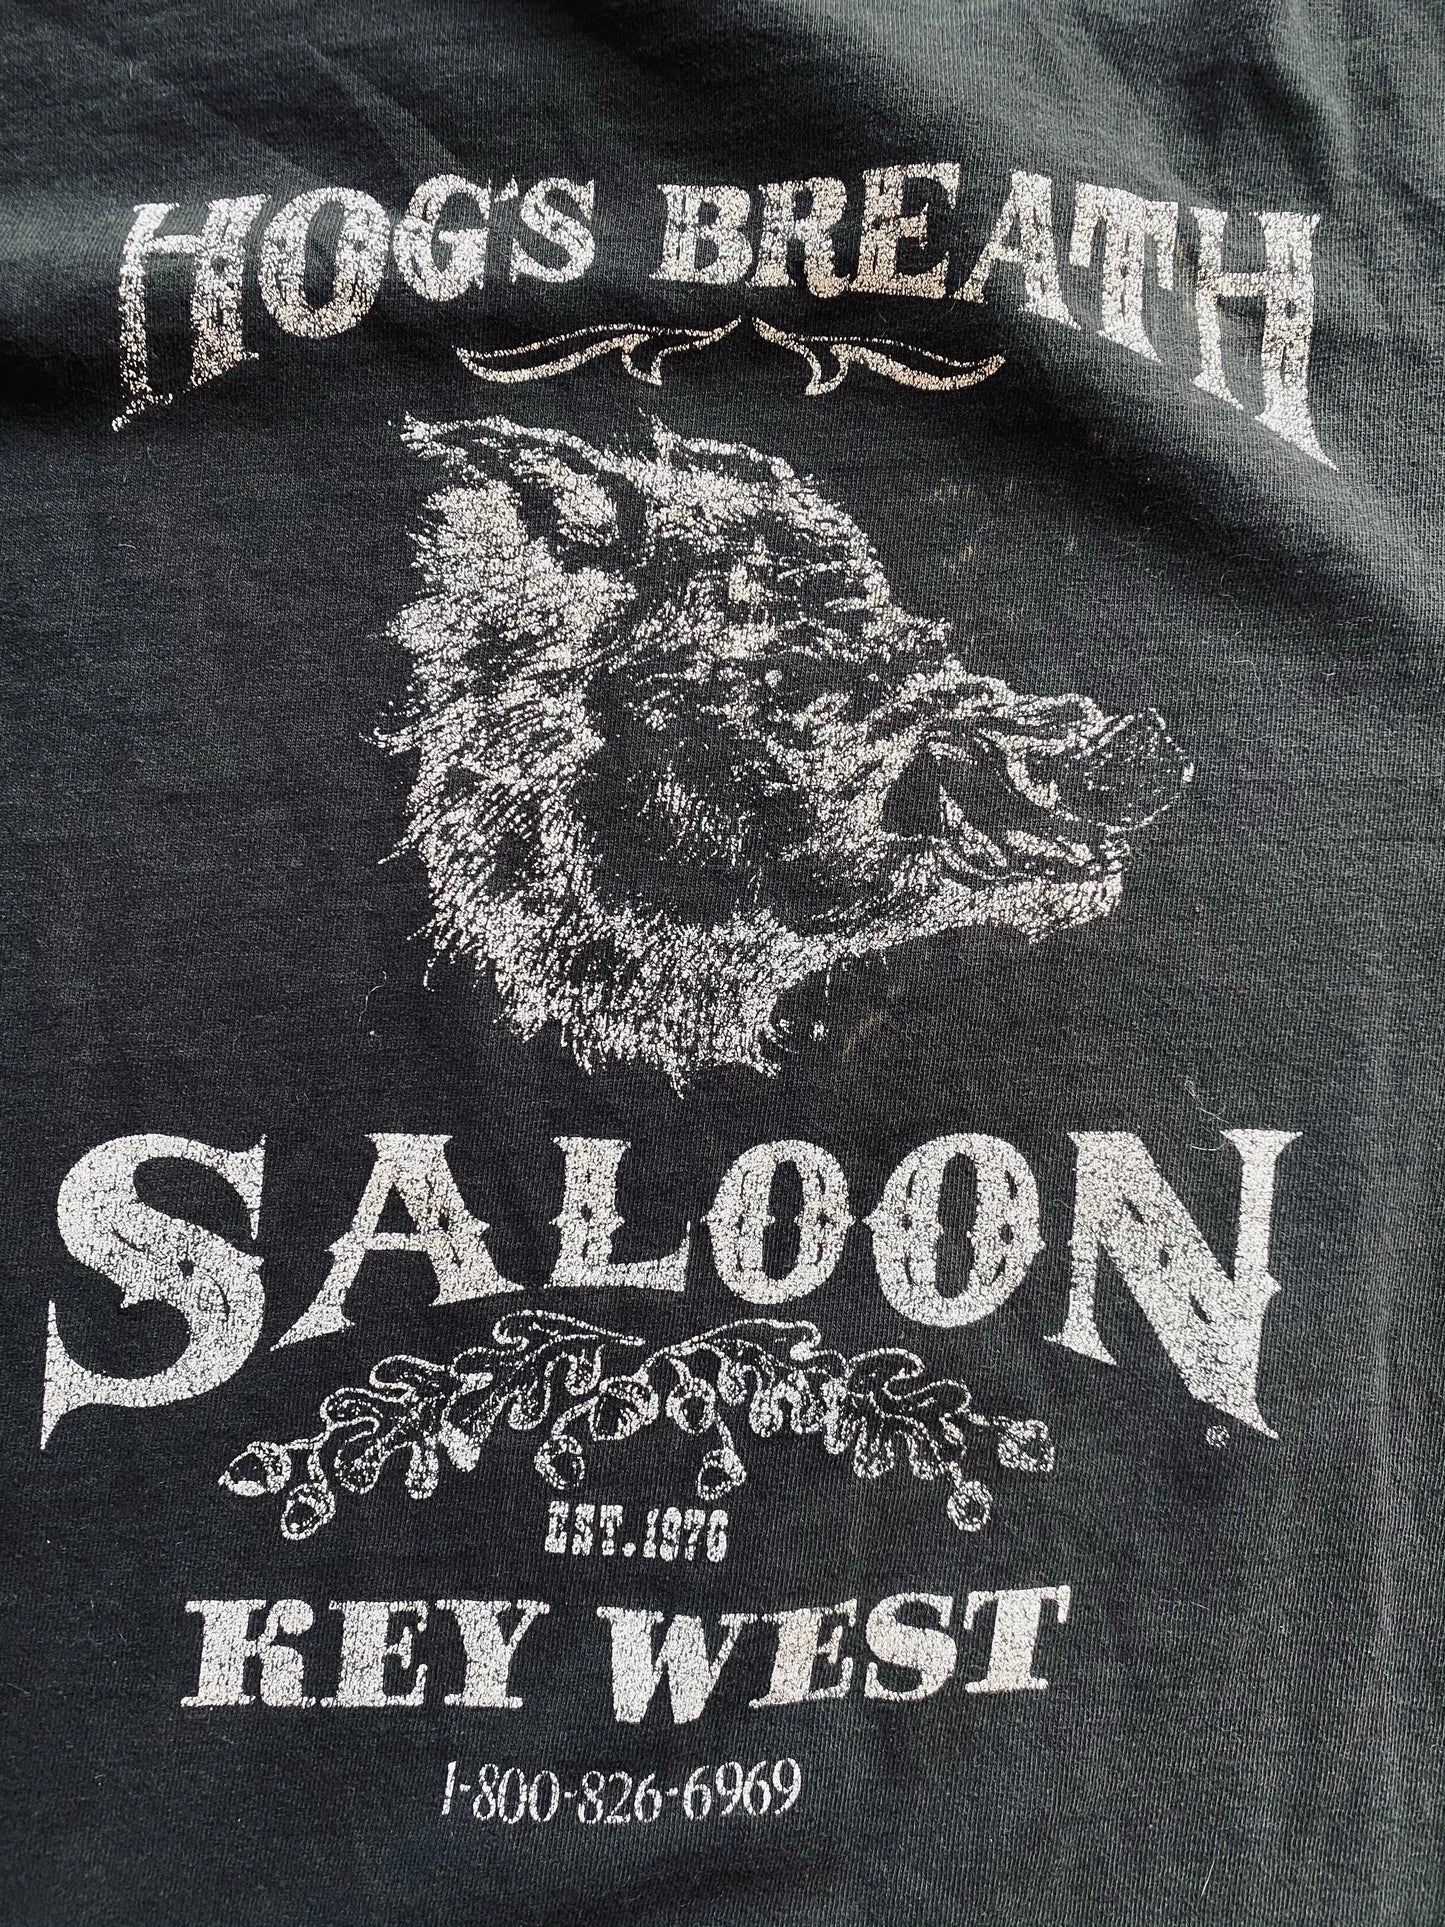 1990s Hog’s Breath Saloon Souvenir Tee